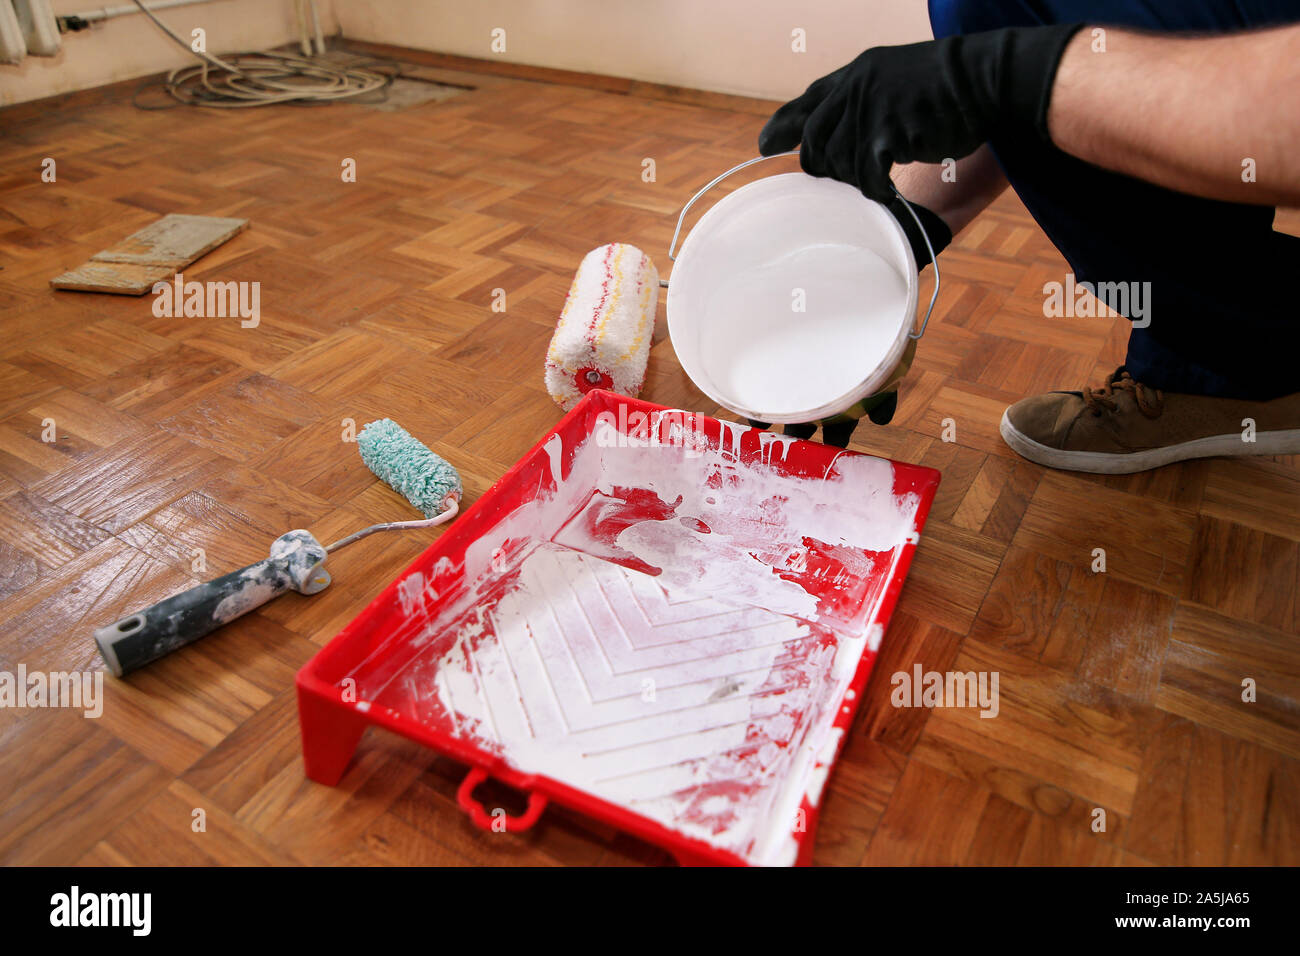 Bauarbeiter tun beenden Renovierung im Apartment. Maler mit schwarzen Handschuhen gießt Farbe weiß von der Schaufel in die roten Schüssel für Farbe mischen. Stockfoto